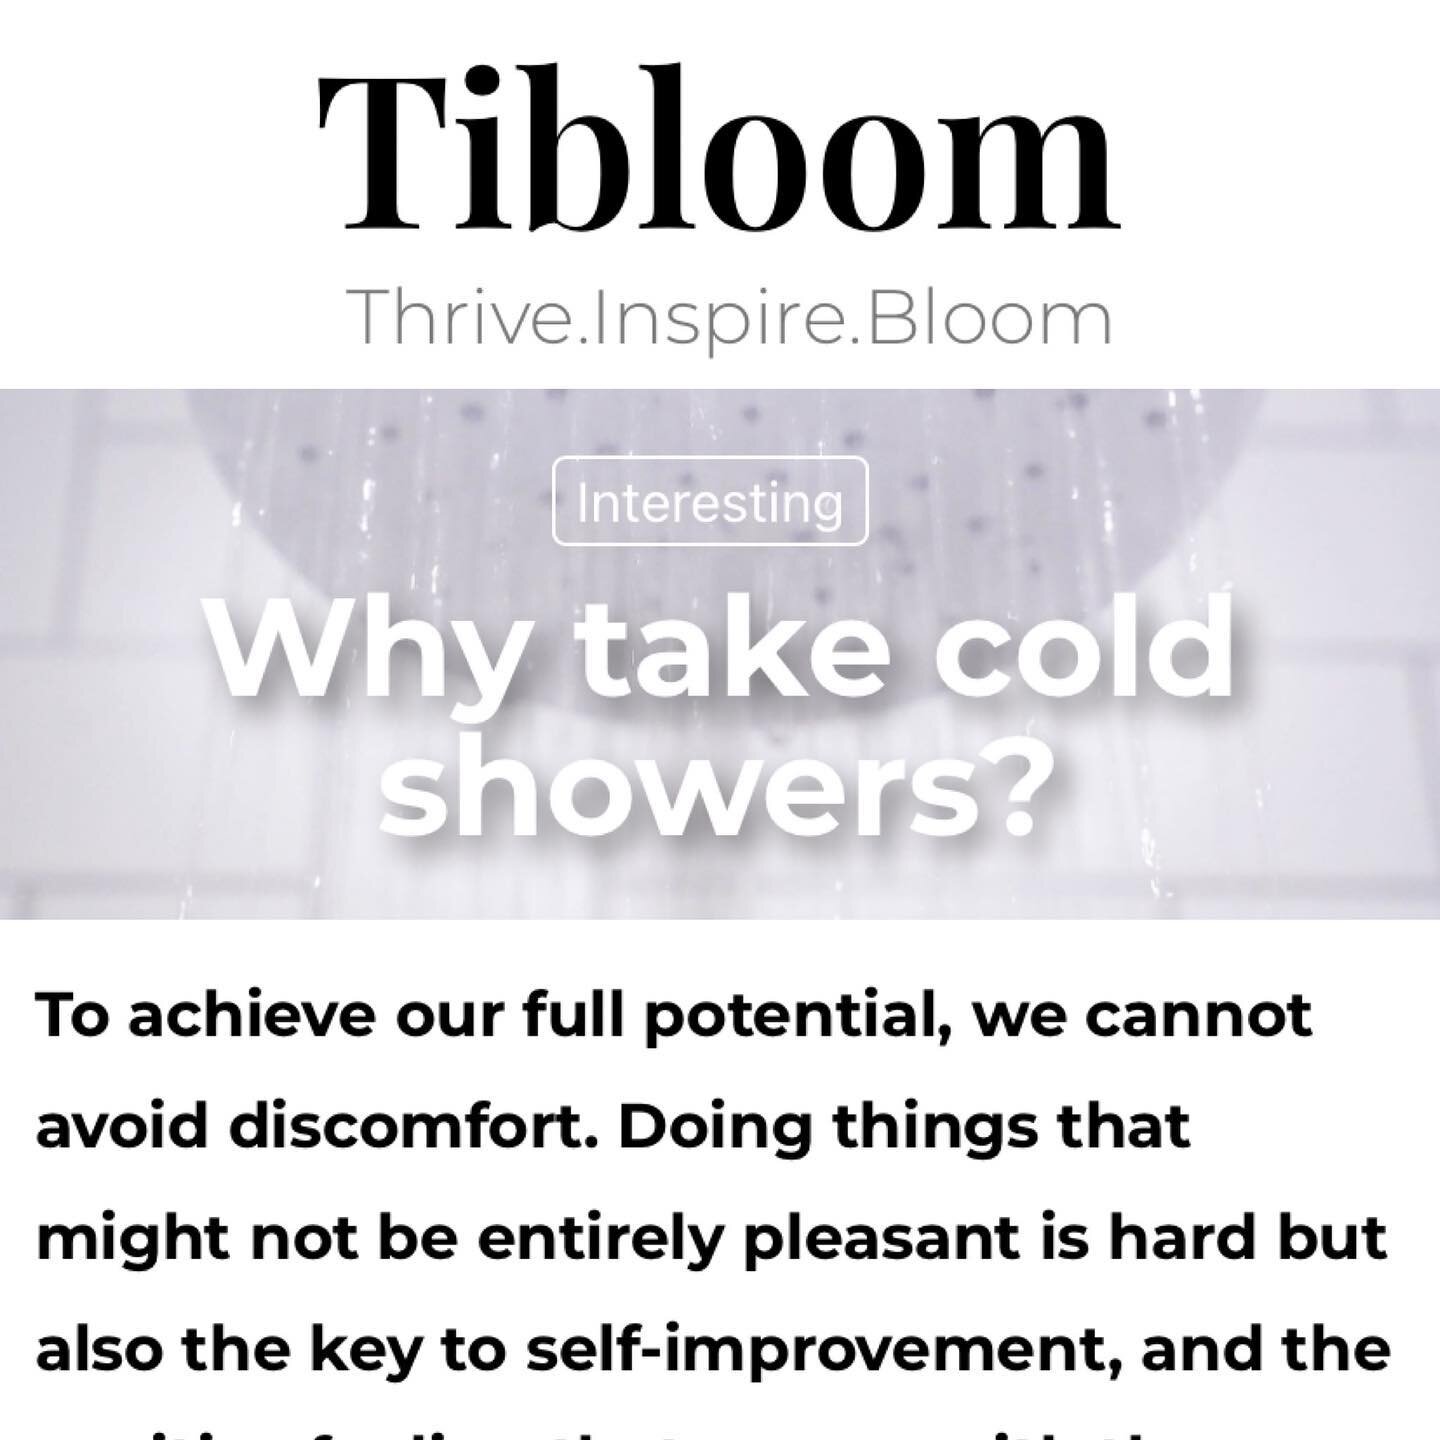 #shower #coldshower #benefits #selfdiscipline

https://tibloom.com/interesting/why-take-cold-showers/